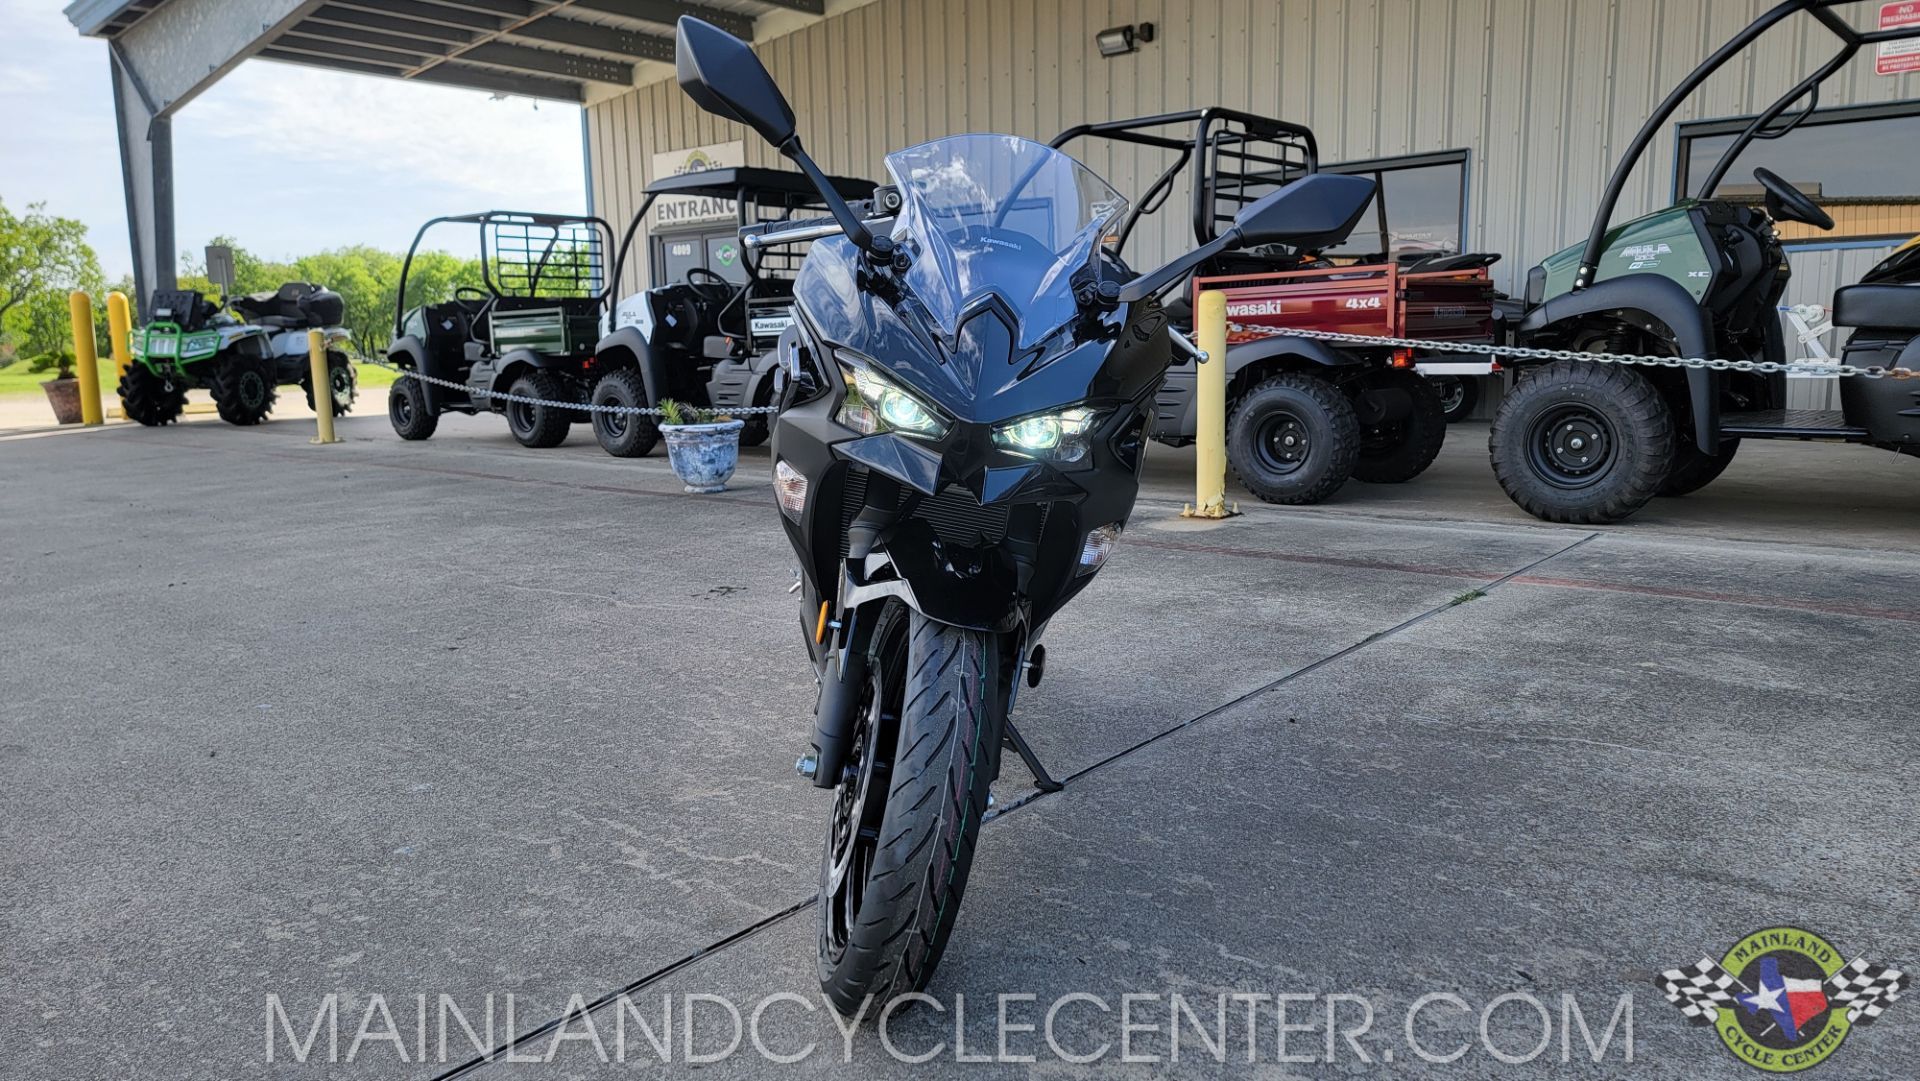 2024 Kawasaki Ninja 500 ABS in La Marque, Texas - Photo 9